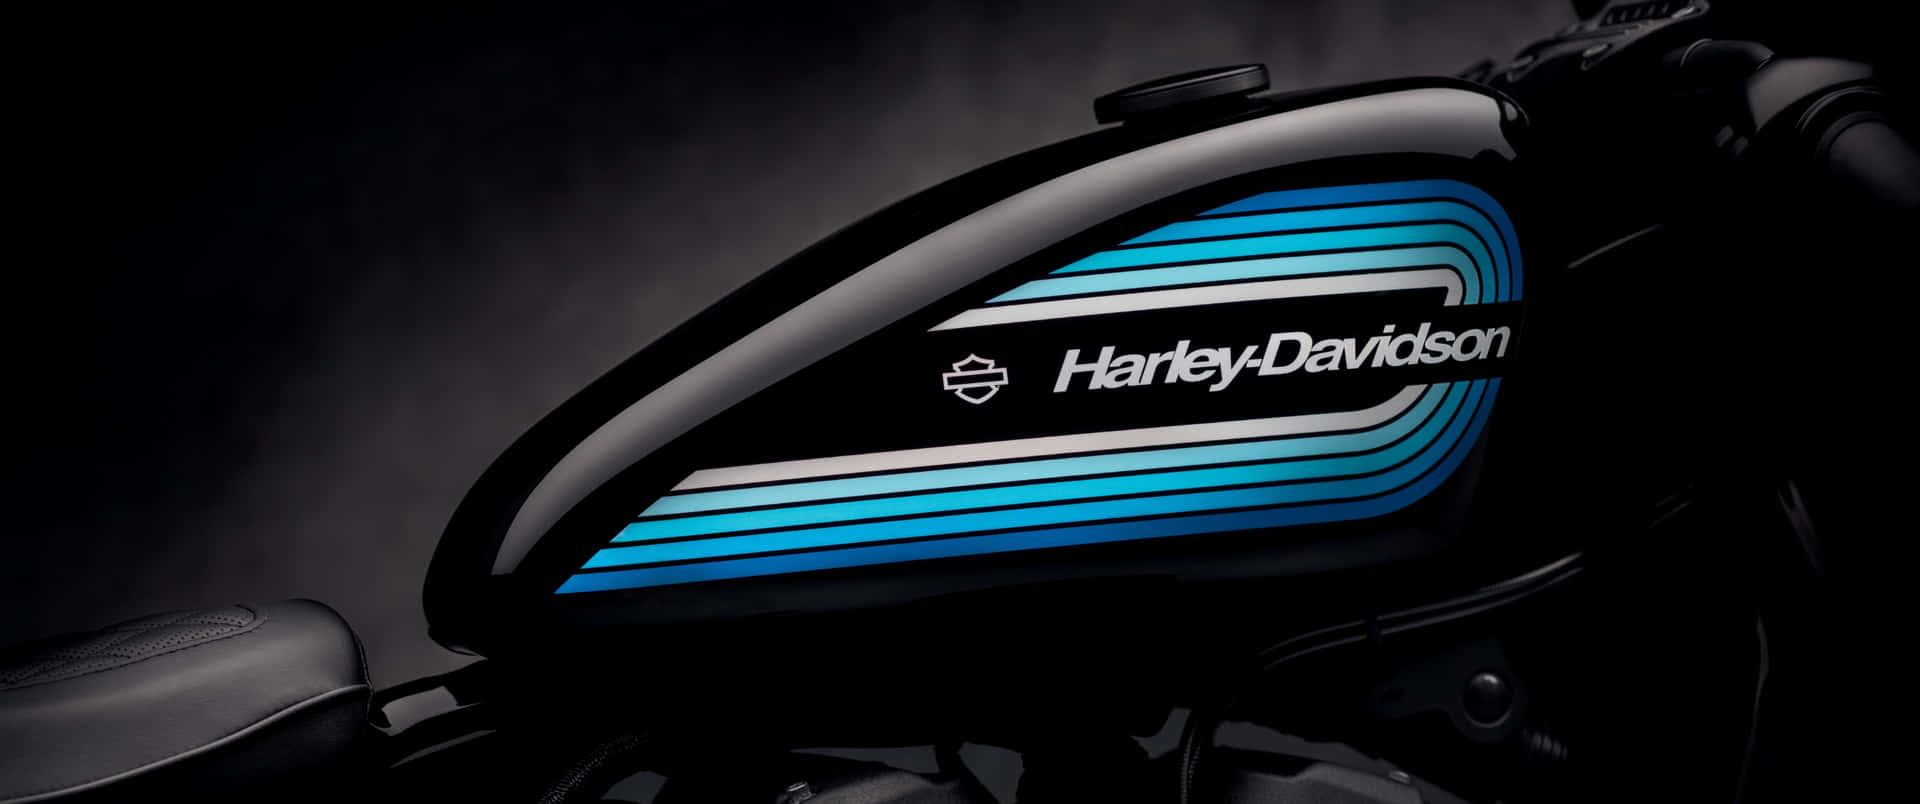 Harley Davidson Vintage Blue Emblem Background